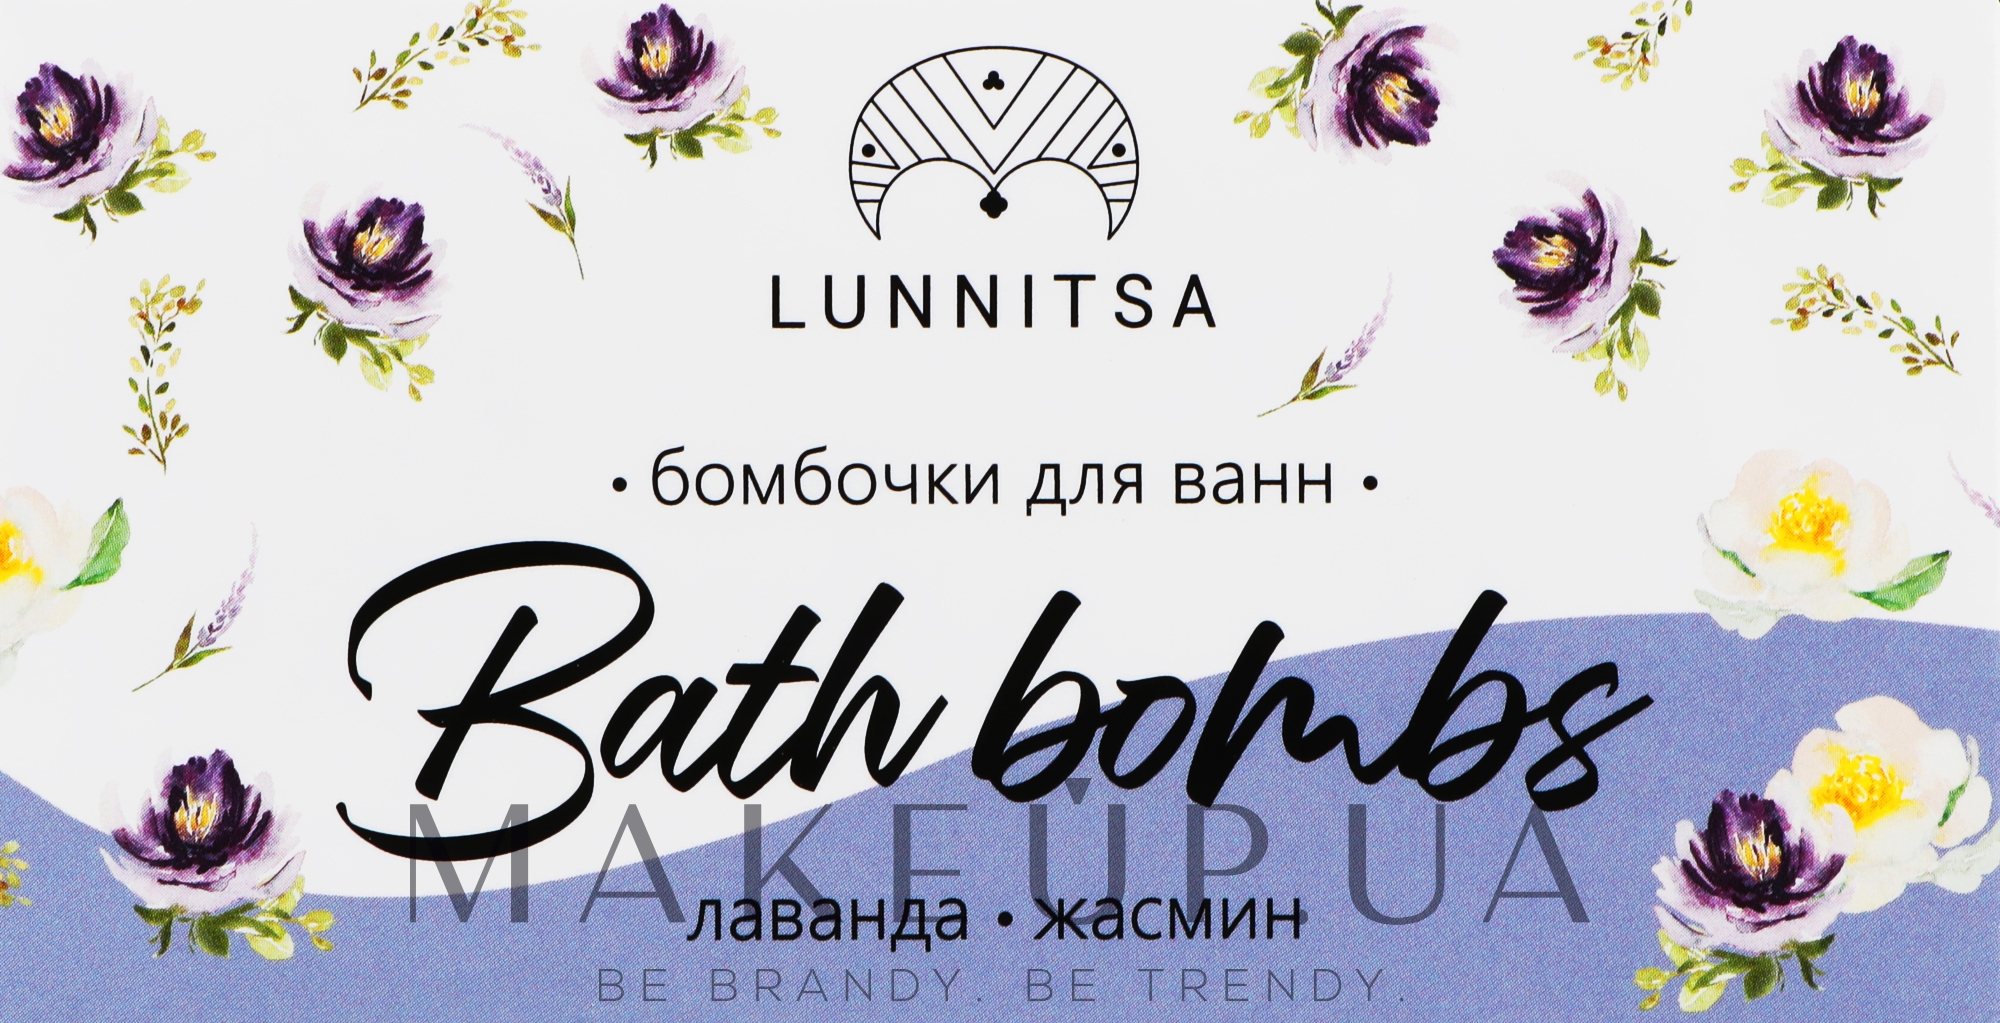 Бомбочки для ванн "Лаванда-жасмин" - Lunnitsa Bath Bombs — фото 200g